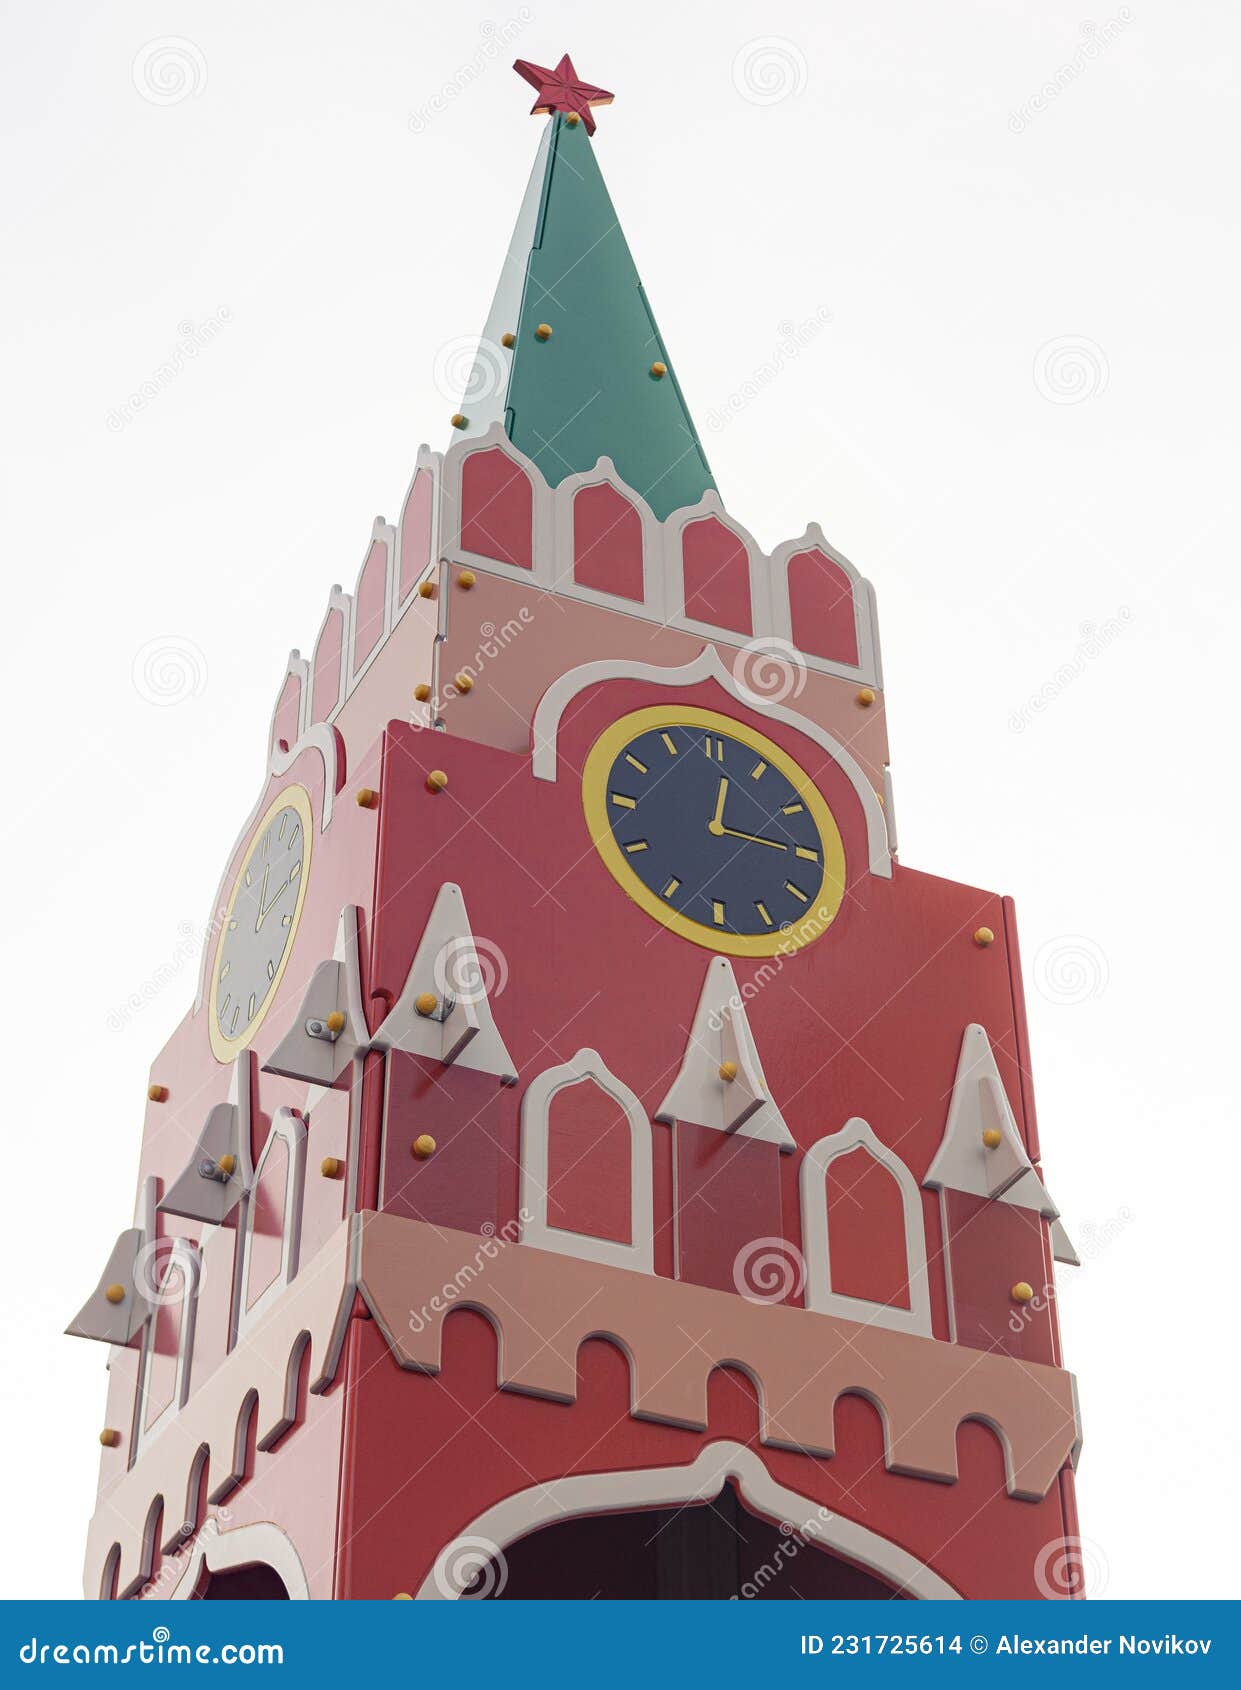 Башни московского кремля для детей. Игрушечная башня. Башня с часами игрушка. Названия игрушечных башен. Троицкая башня из бумаги.